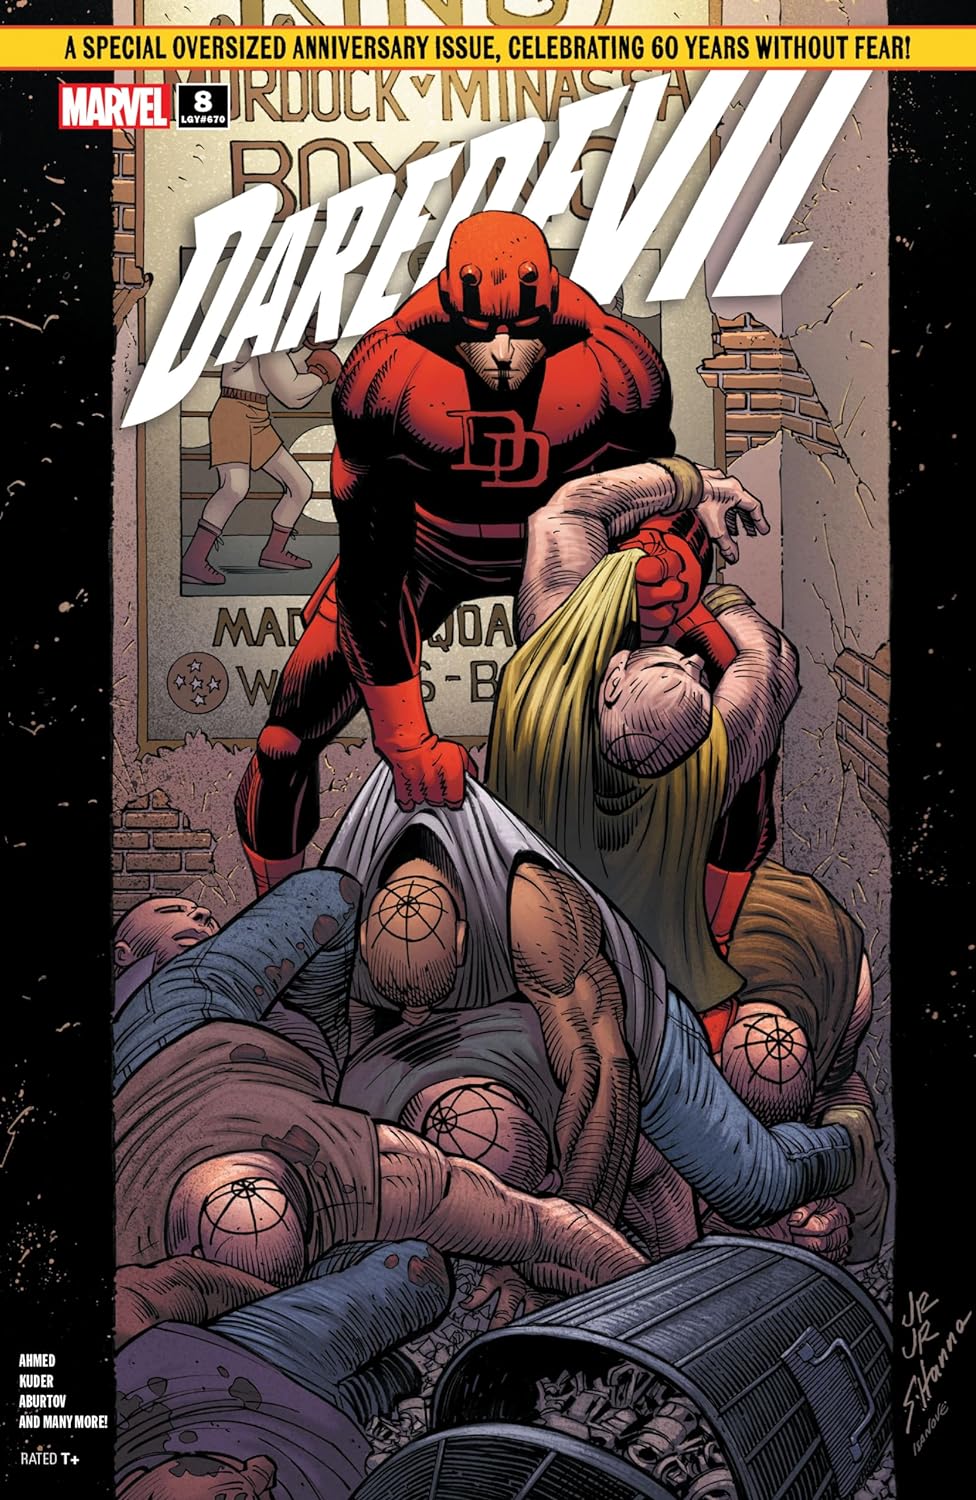 Daredevil #8 cover art